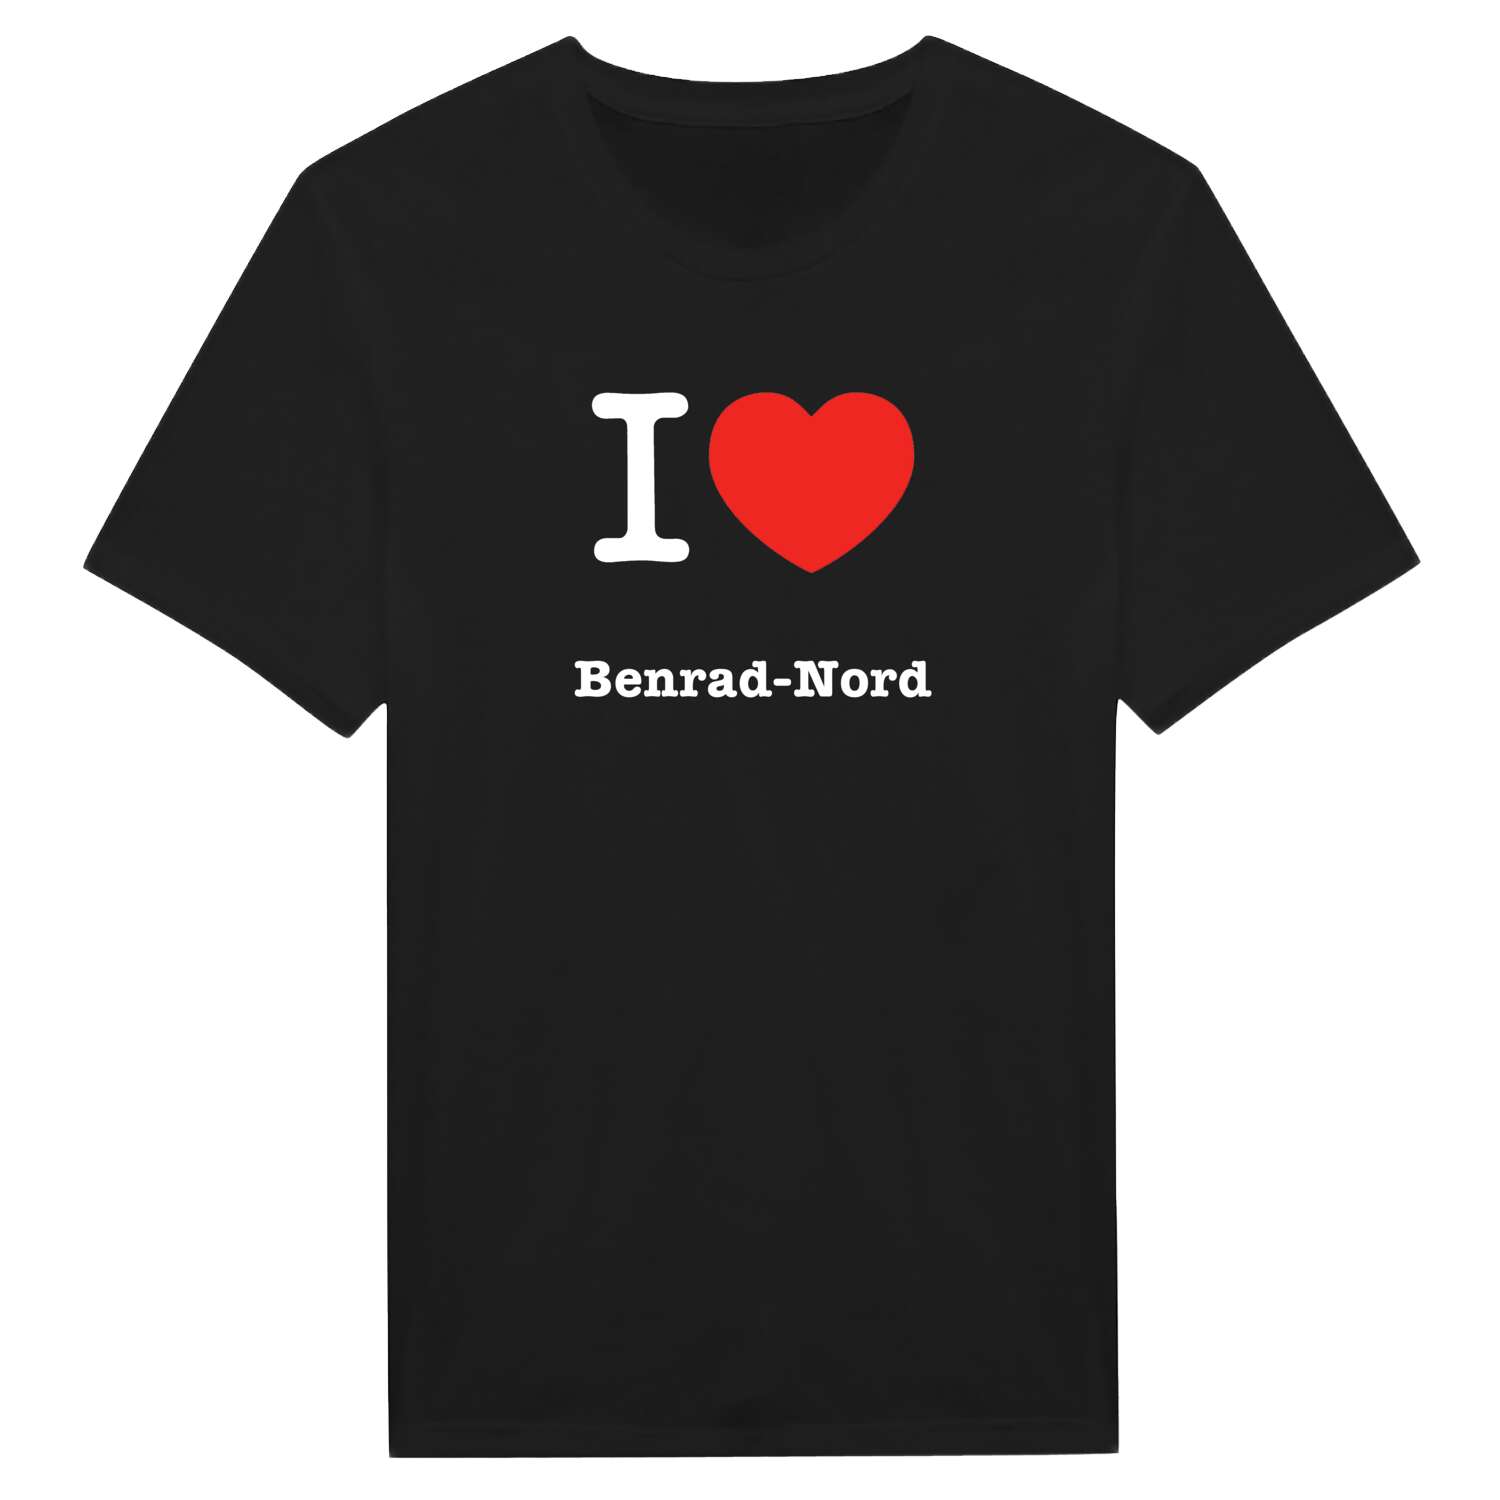 Benrad-Nord T-Shirt »I love«